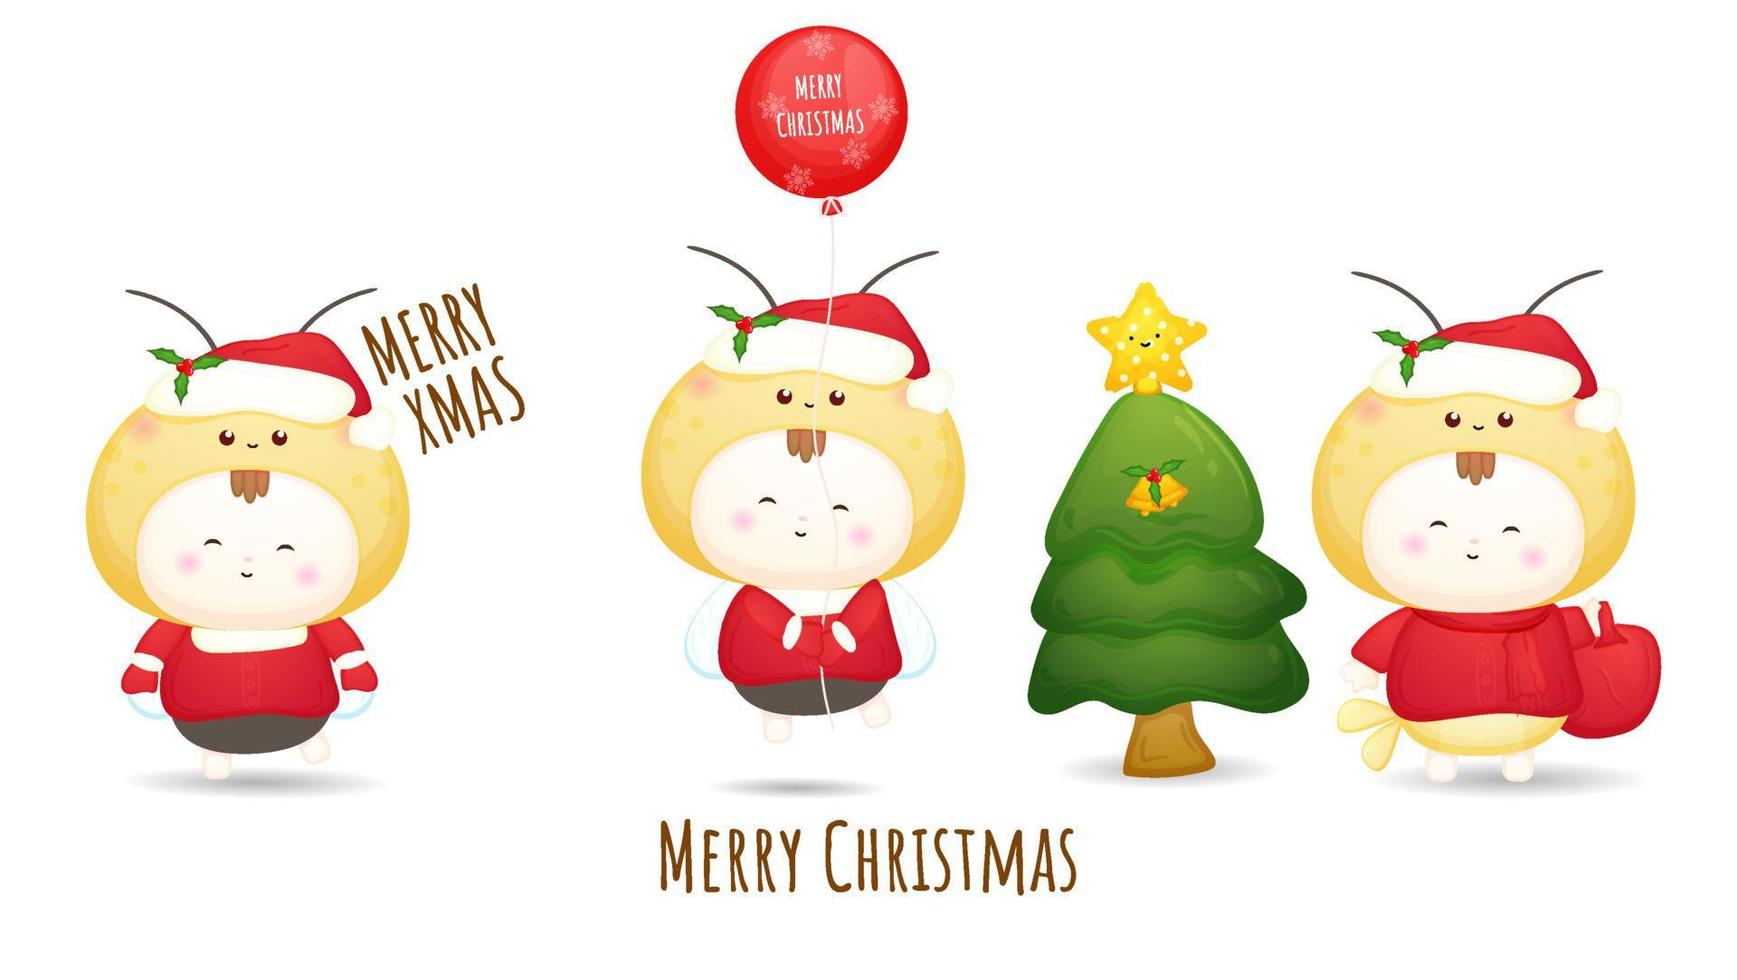 süßer doodle baby santa für frohe weihnachten illustration set premium vector